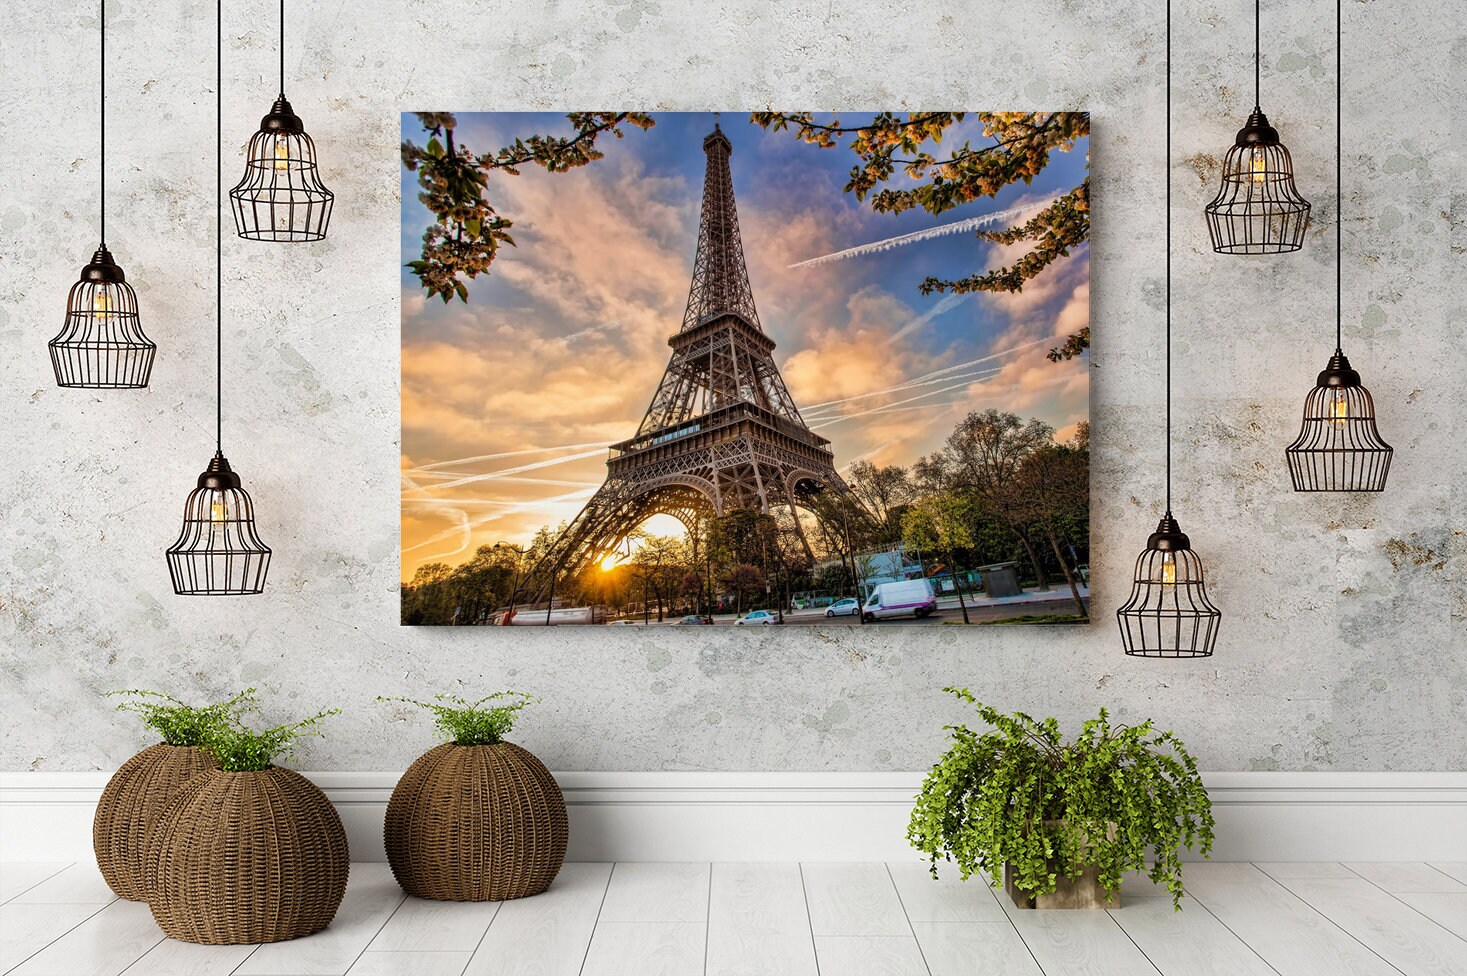 3D Wall Sticker Window view of the Eiffel Tower / Window - Etsy